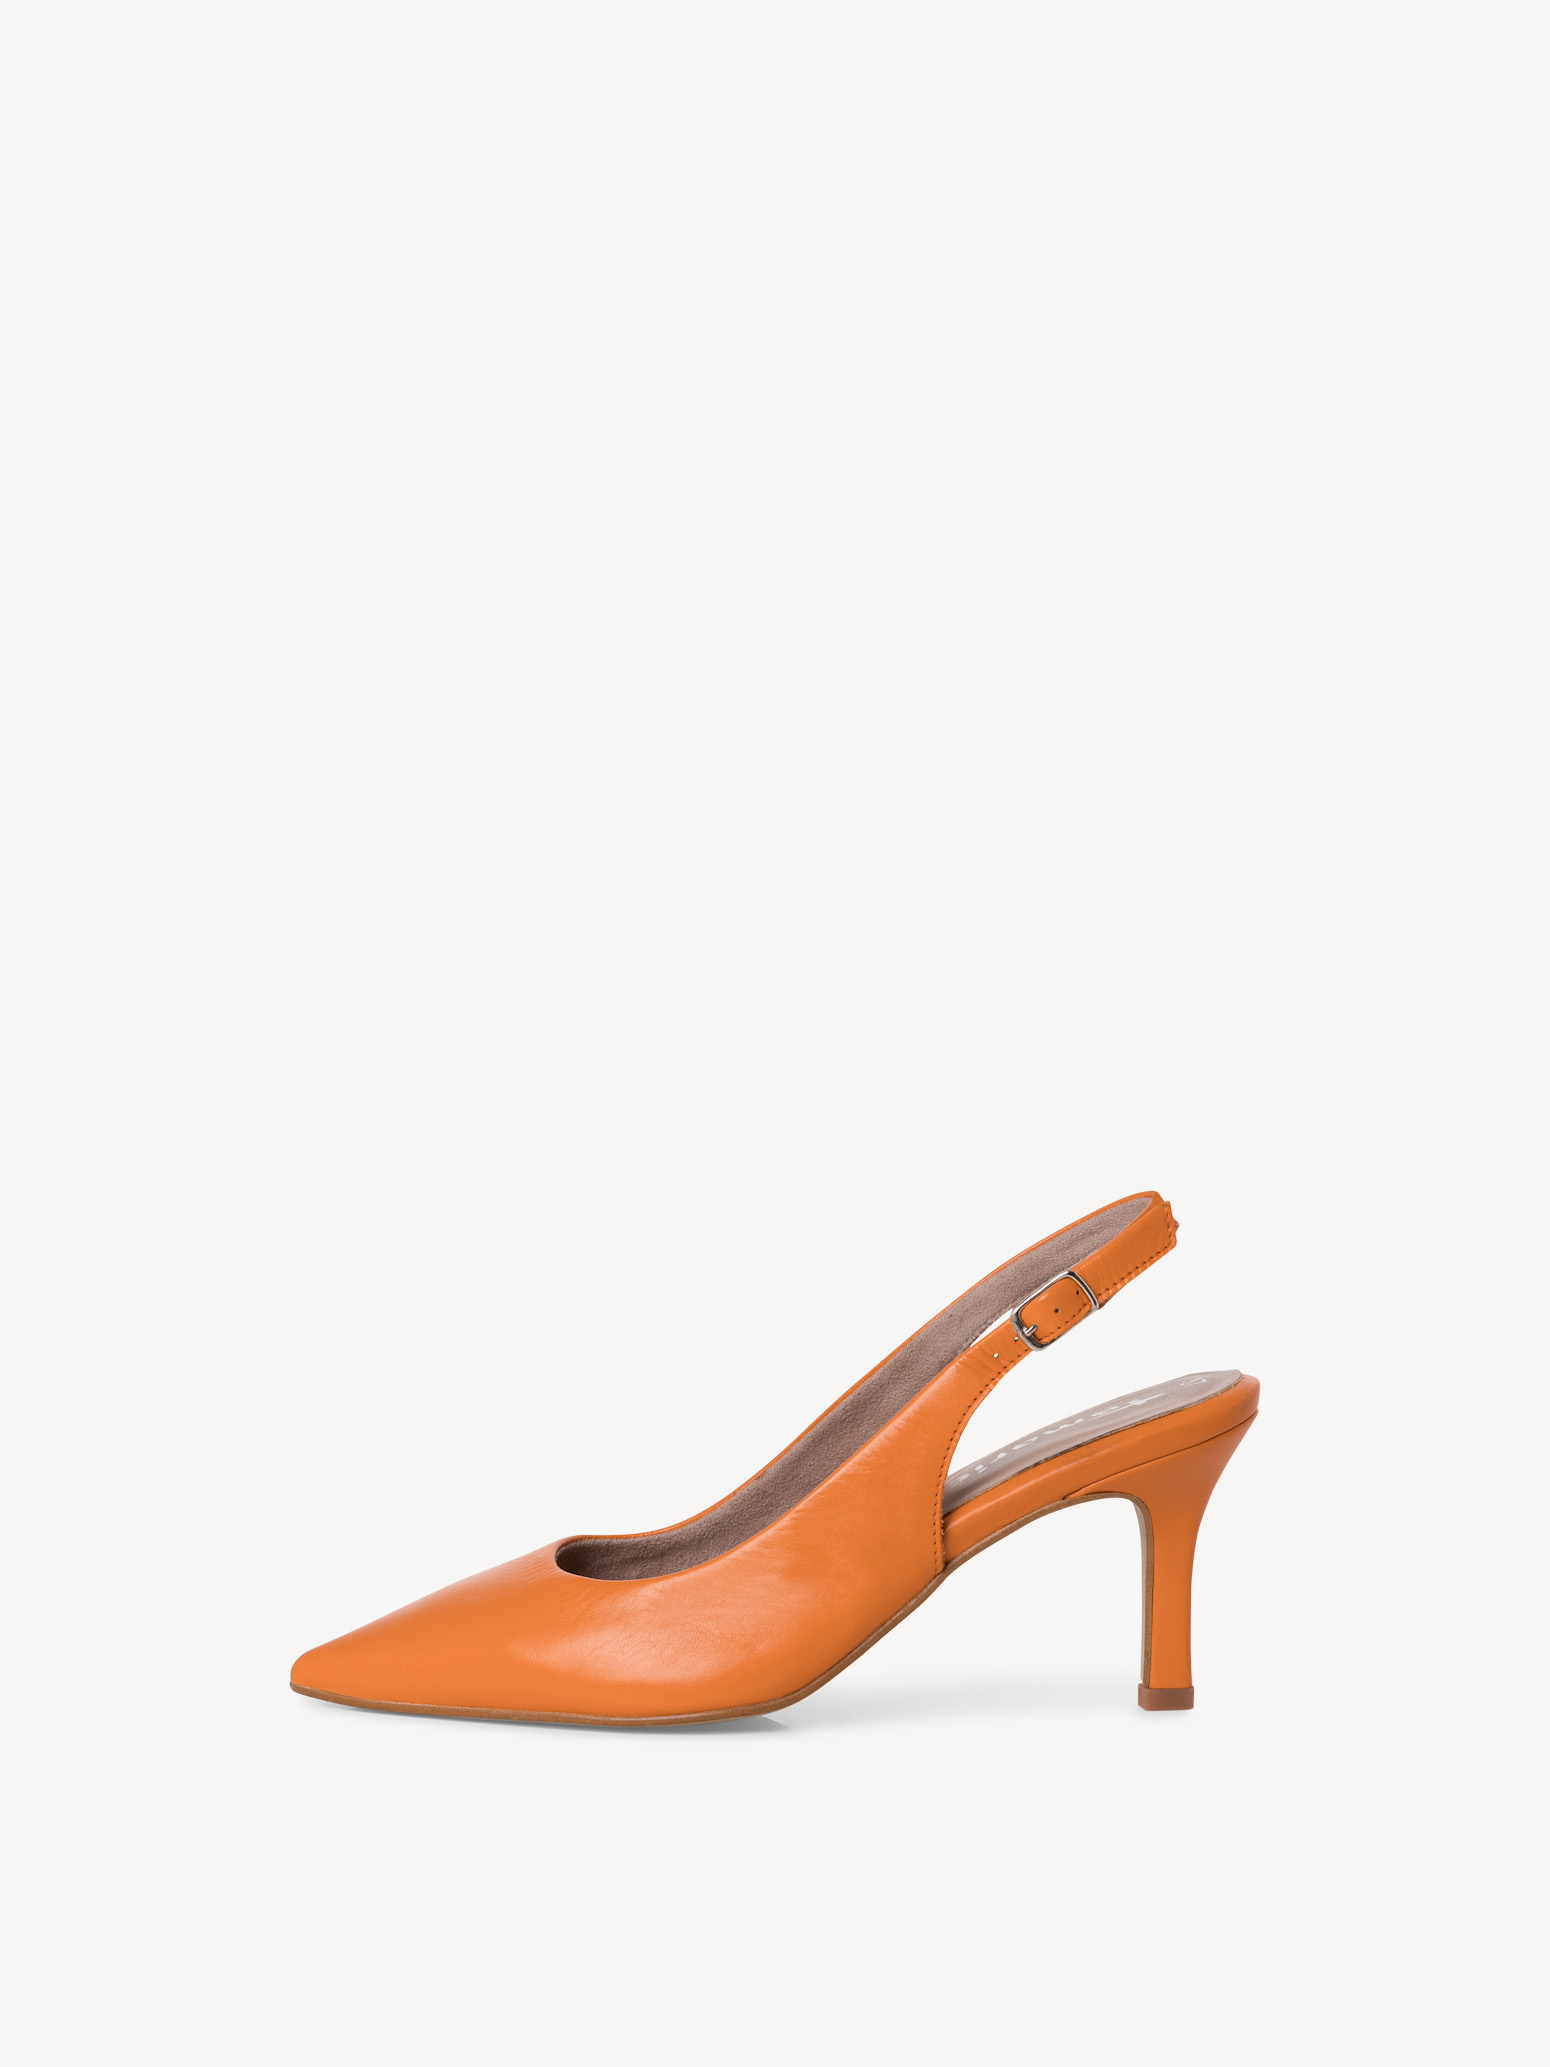 Leather sling pumps - orange